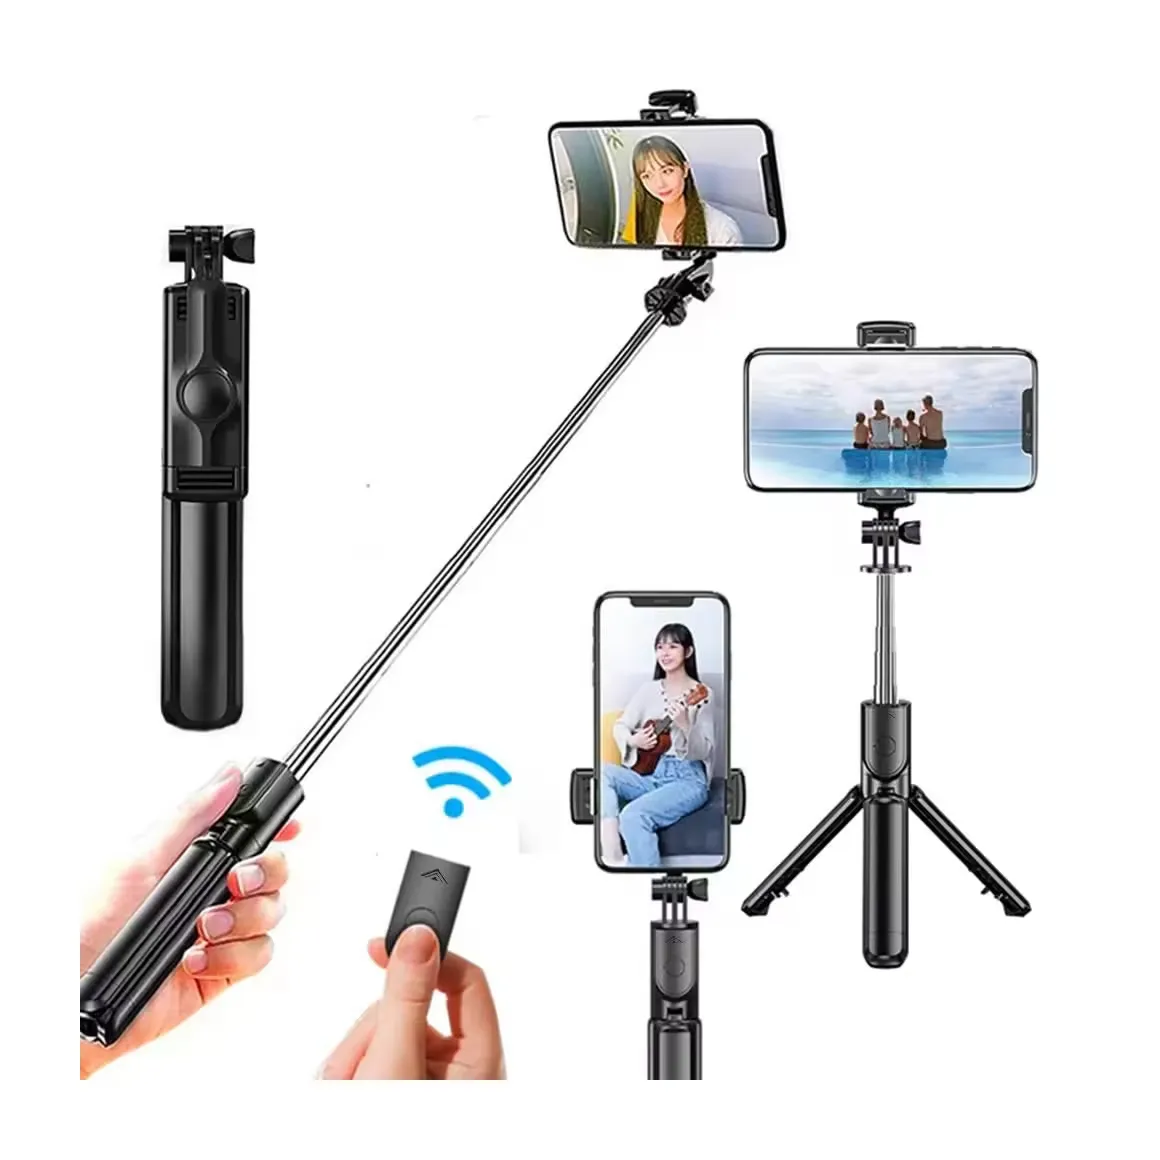 La migliore vendita di Selfie Stick universale monopiede telescopico portatile stabile universale Anti-shake multifunzione Selfie Stick treppiede